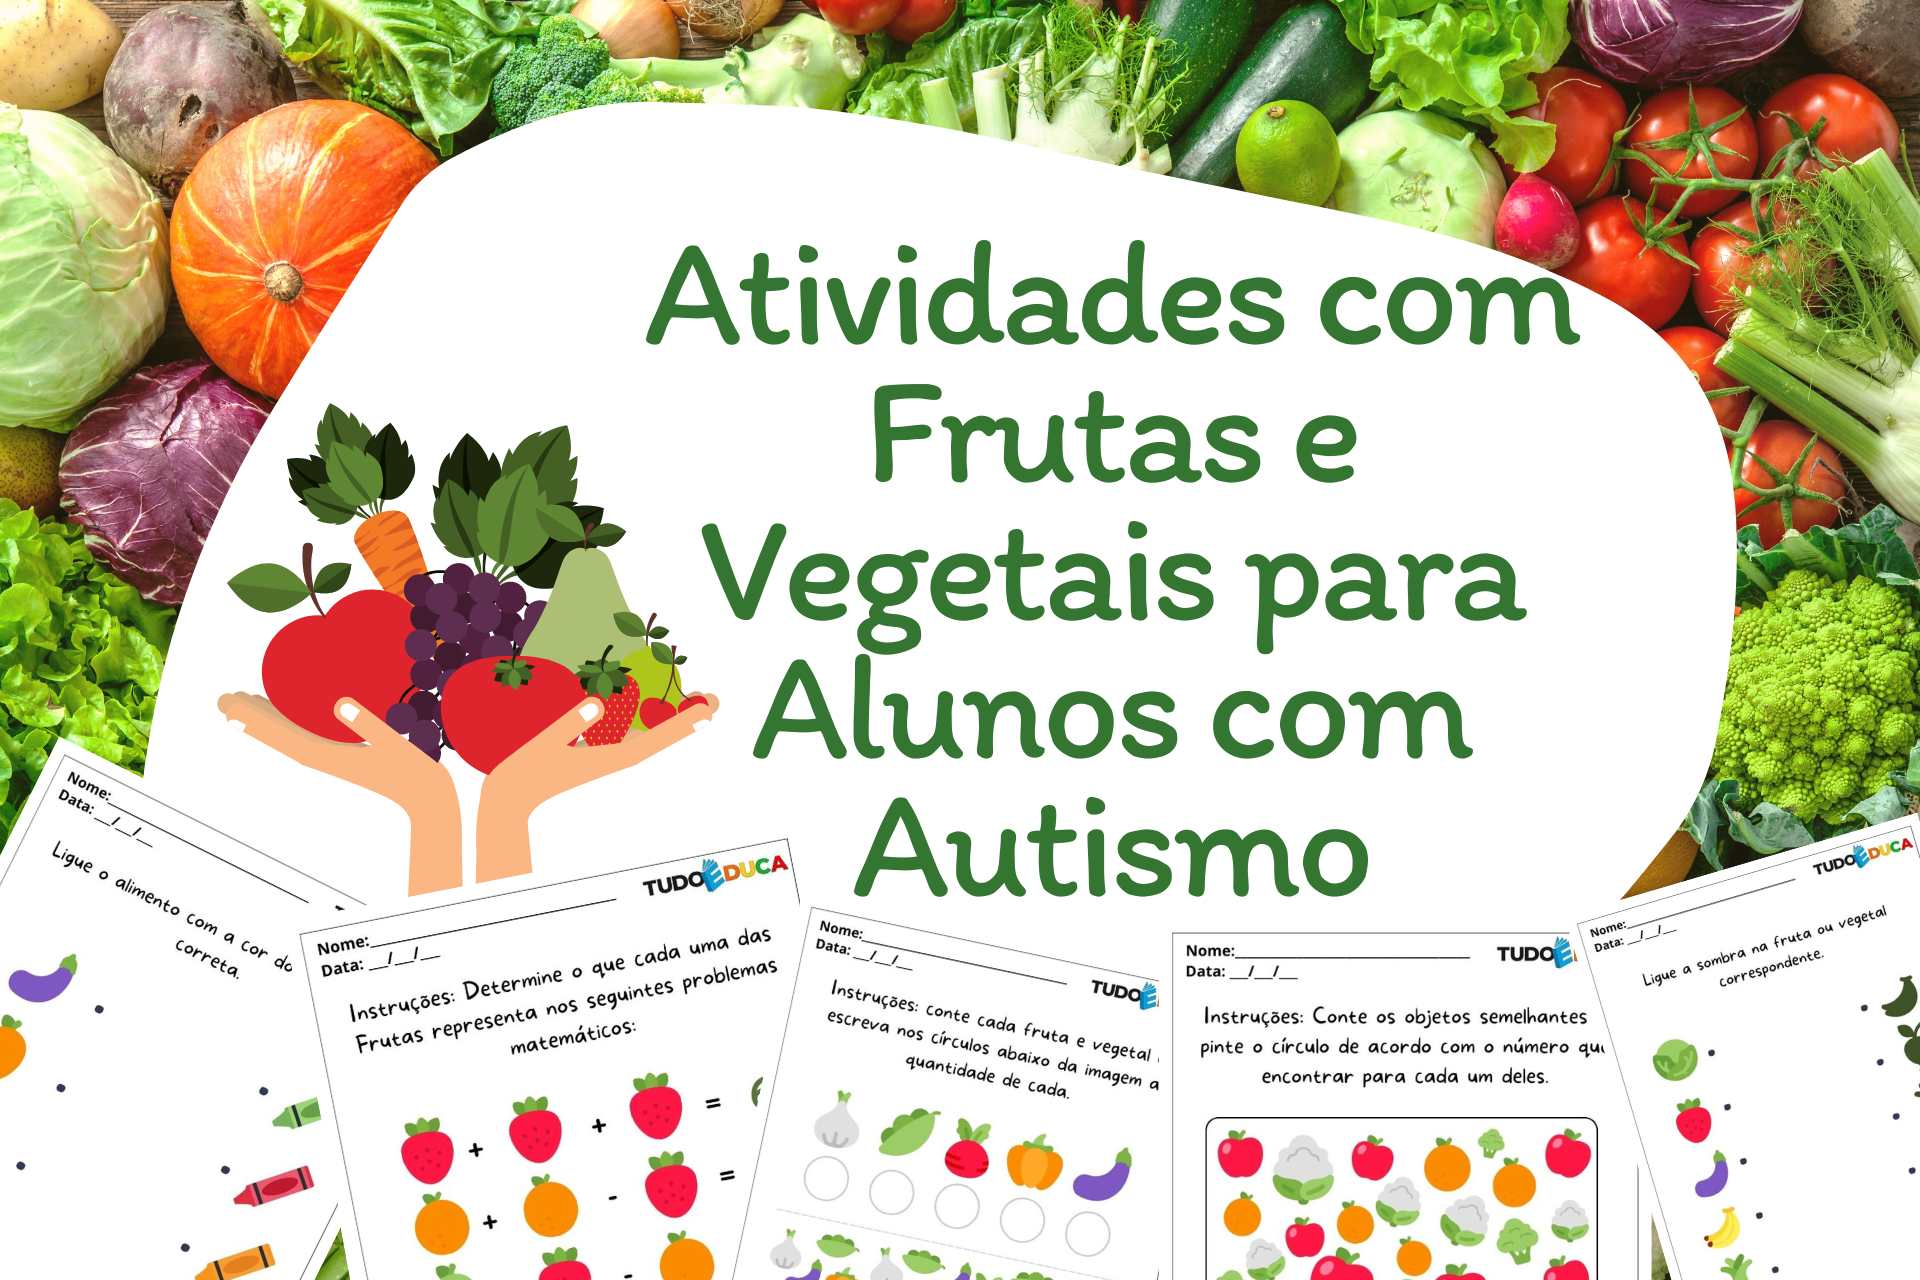 Atividades com Frutas e Vegetais para Alunos com Autismo